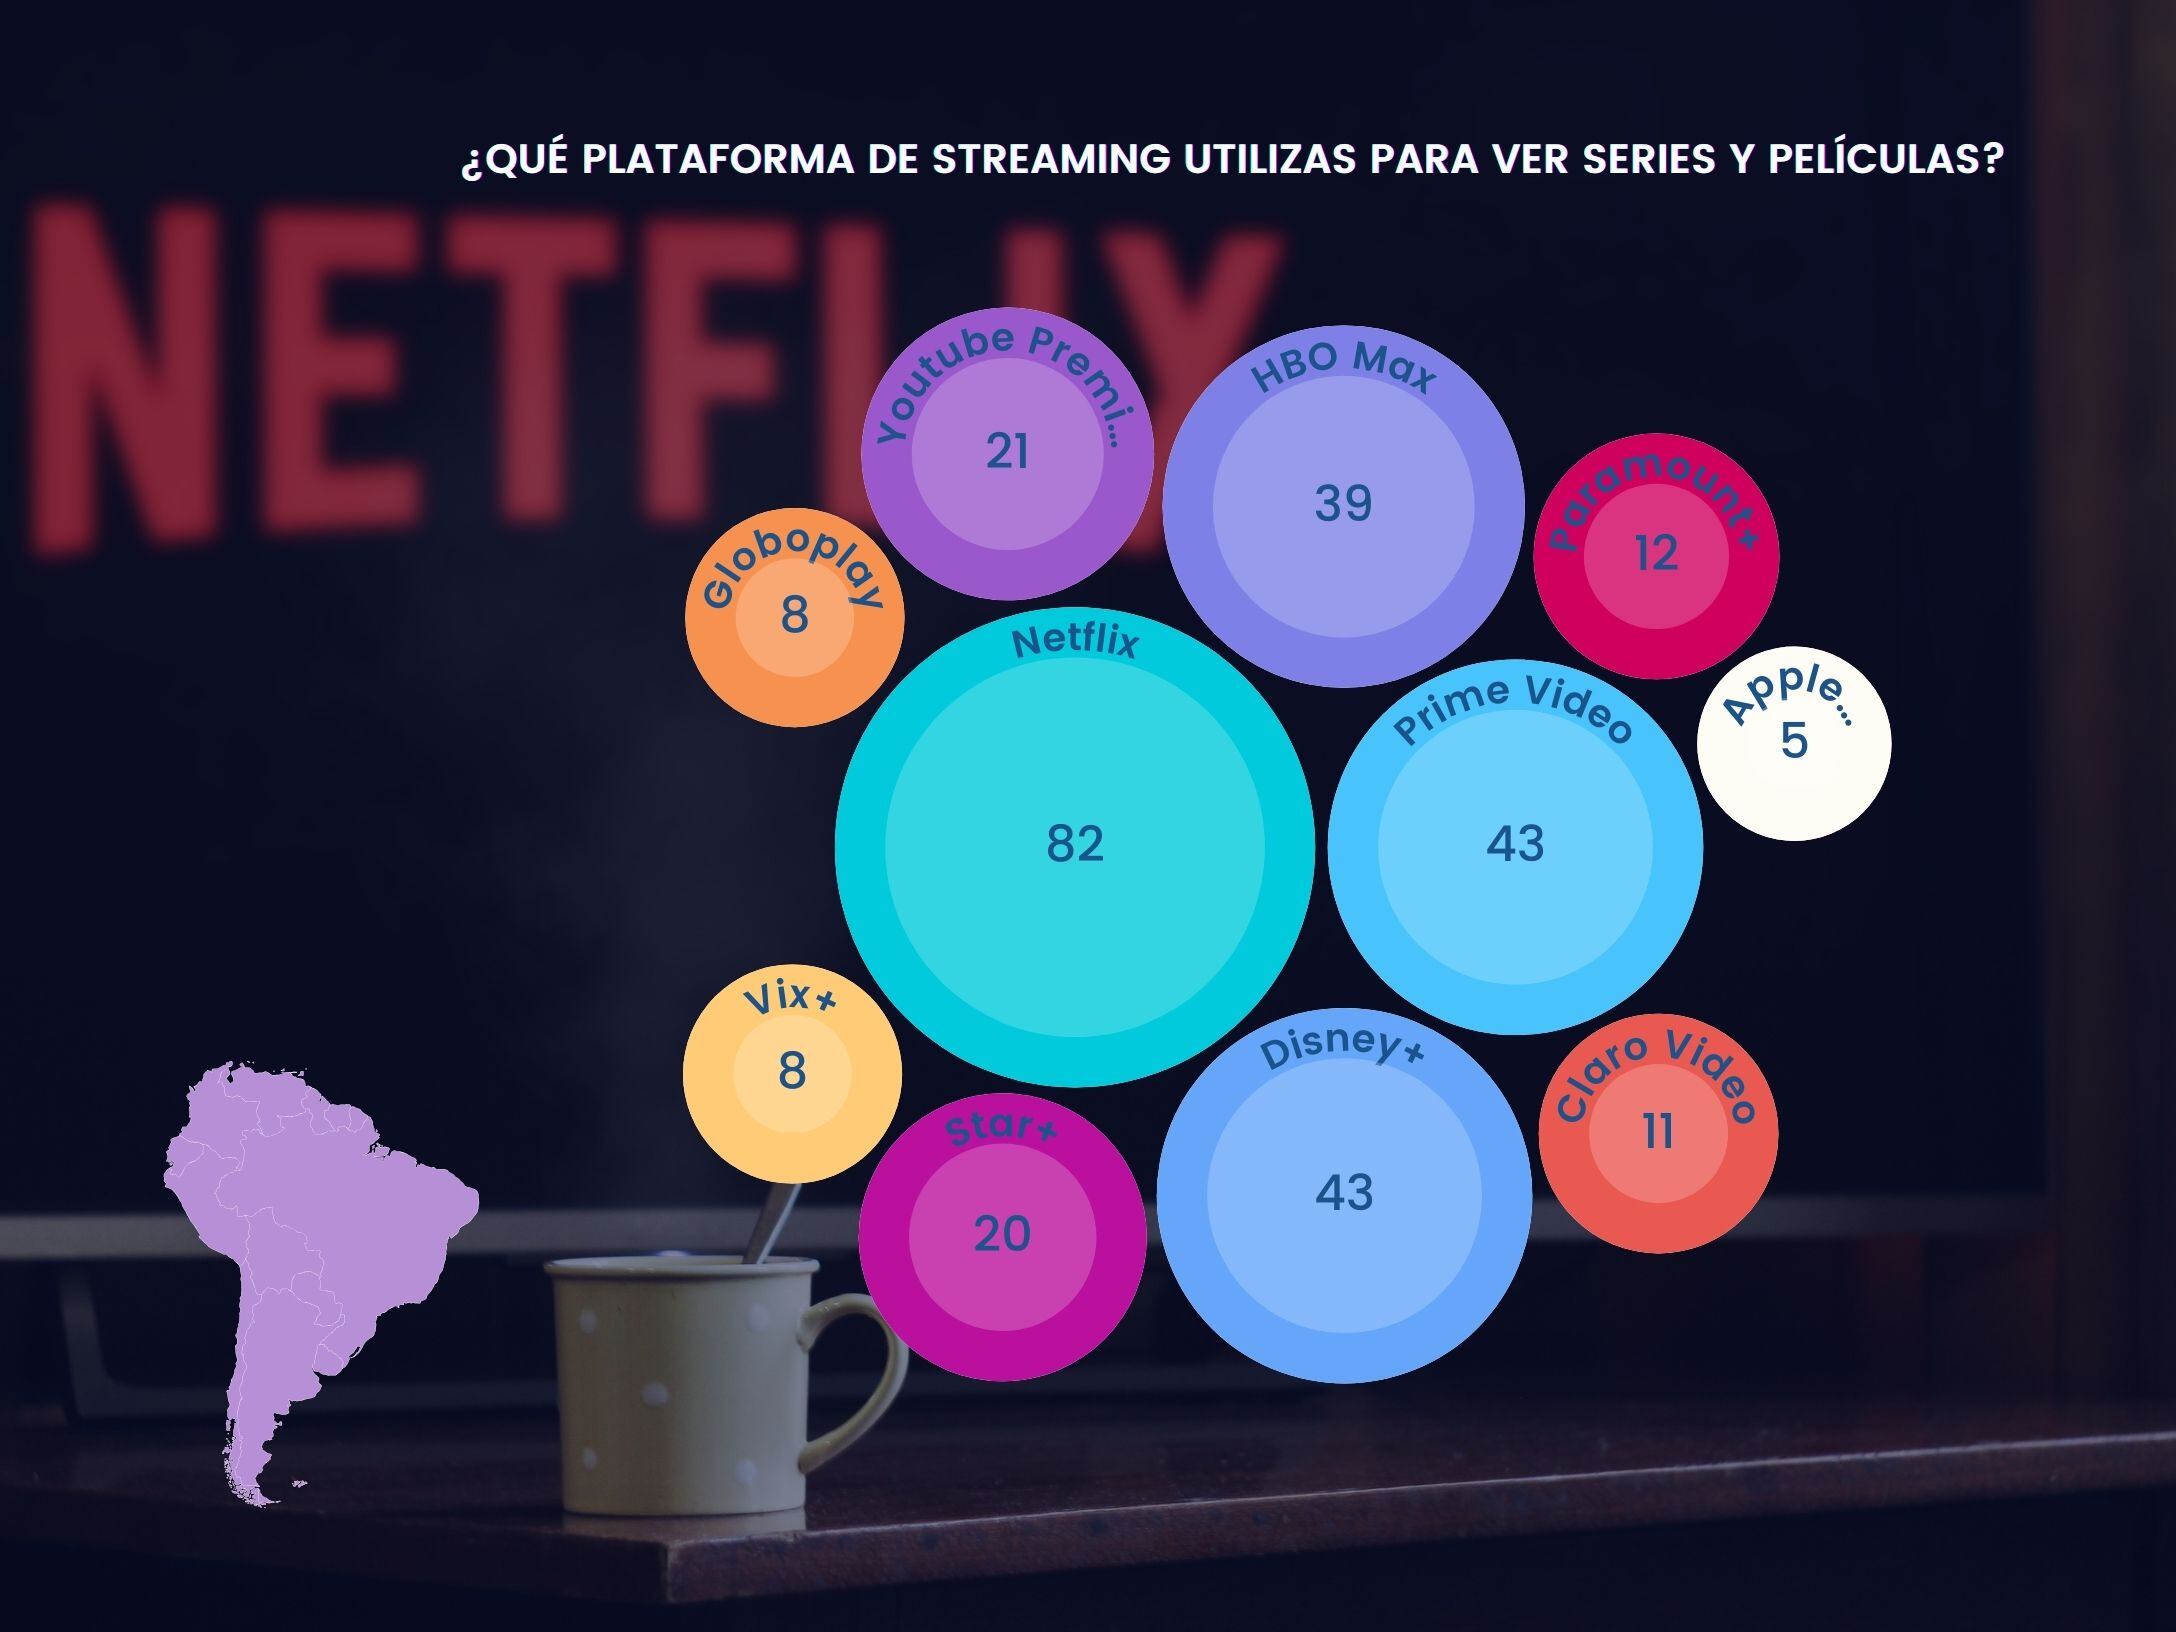 Cifras del “Informe sobre el consumo de streaming en América Latina” realizado por Sherlock Communications a 3.372 personas en la región, donde se encuestó a 424 peruanos adultos residente en el país. (Foto: Composición/Leslie A. Galván).